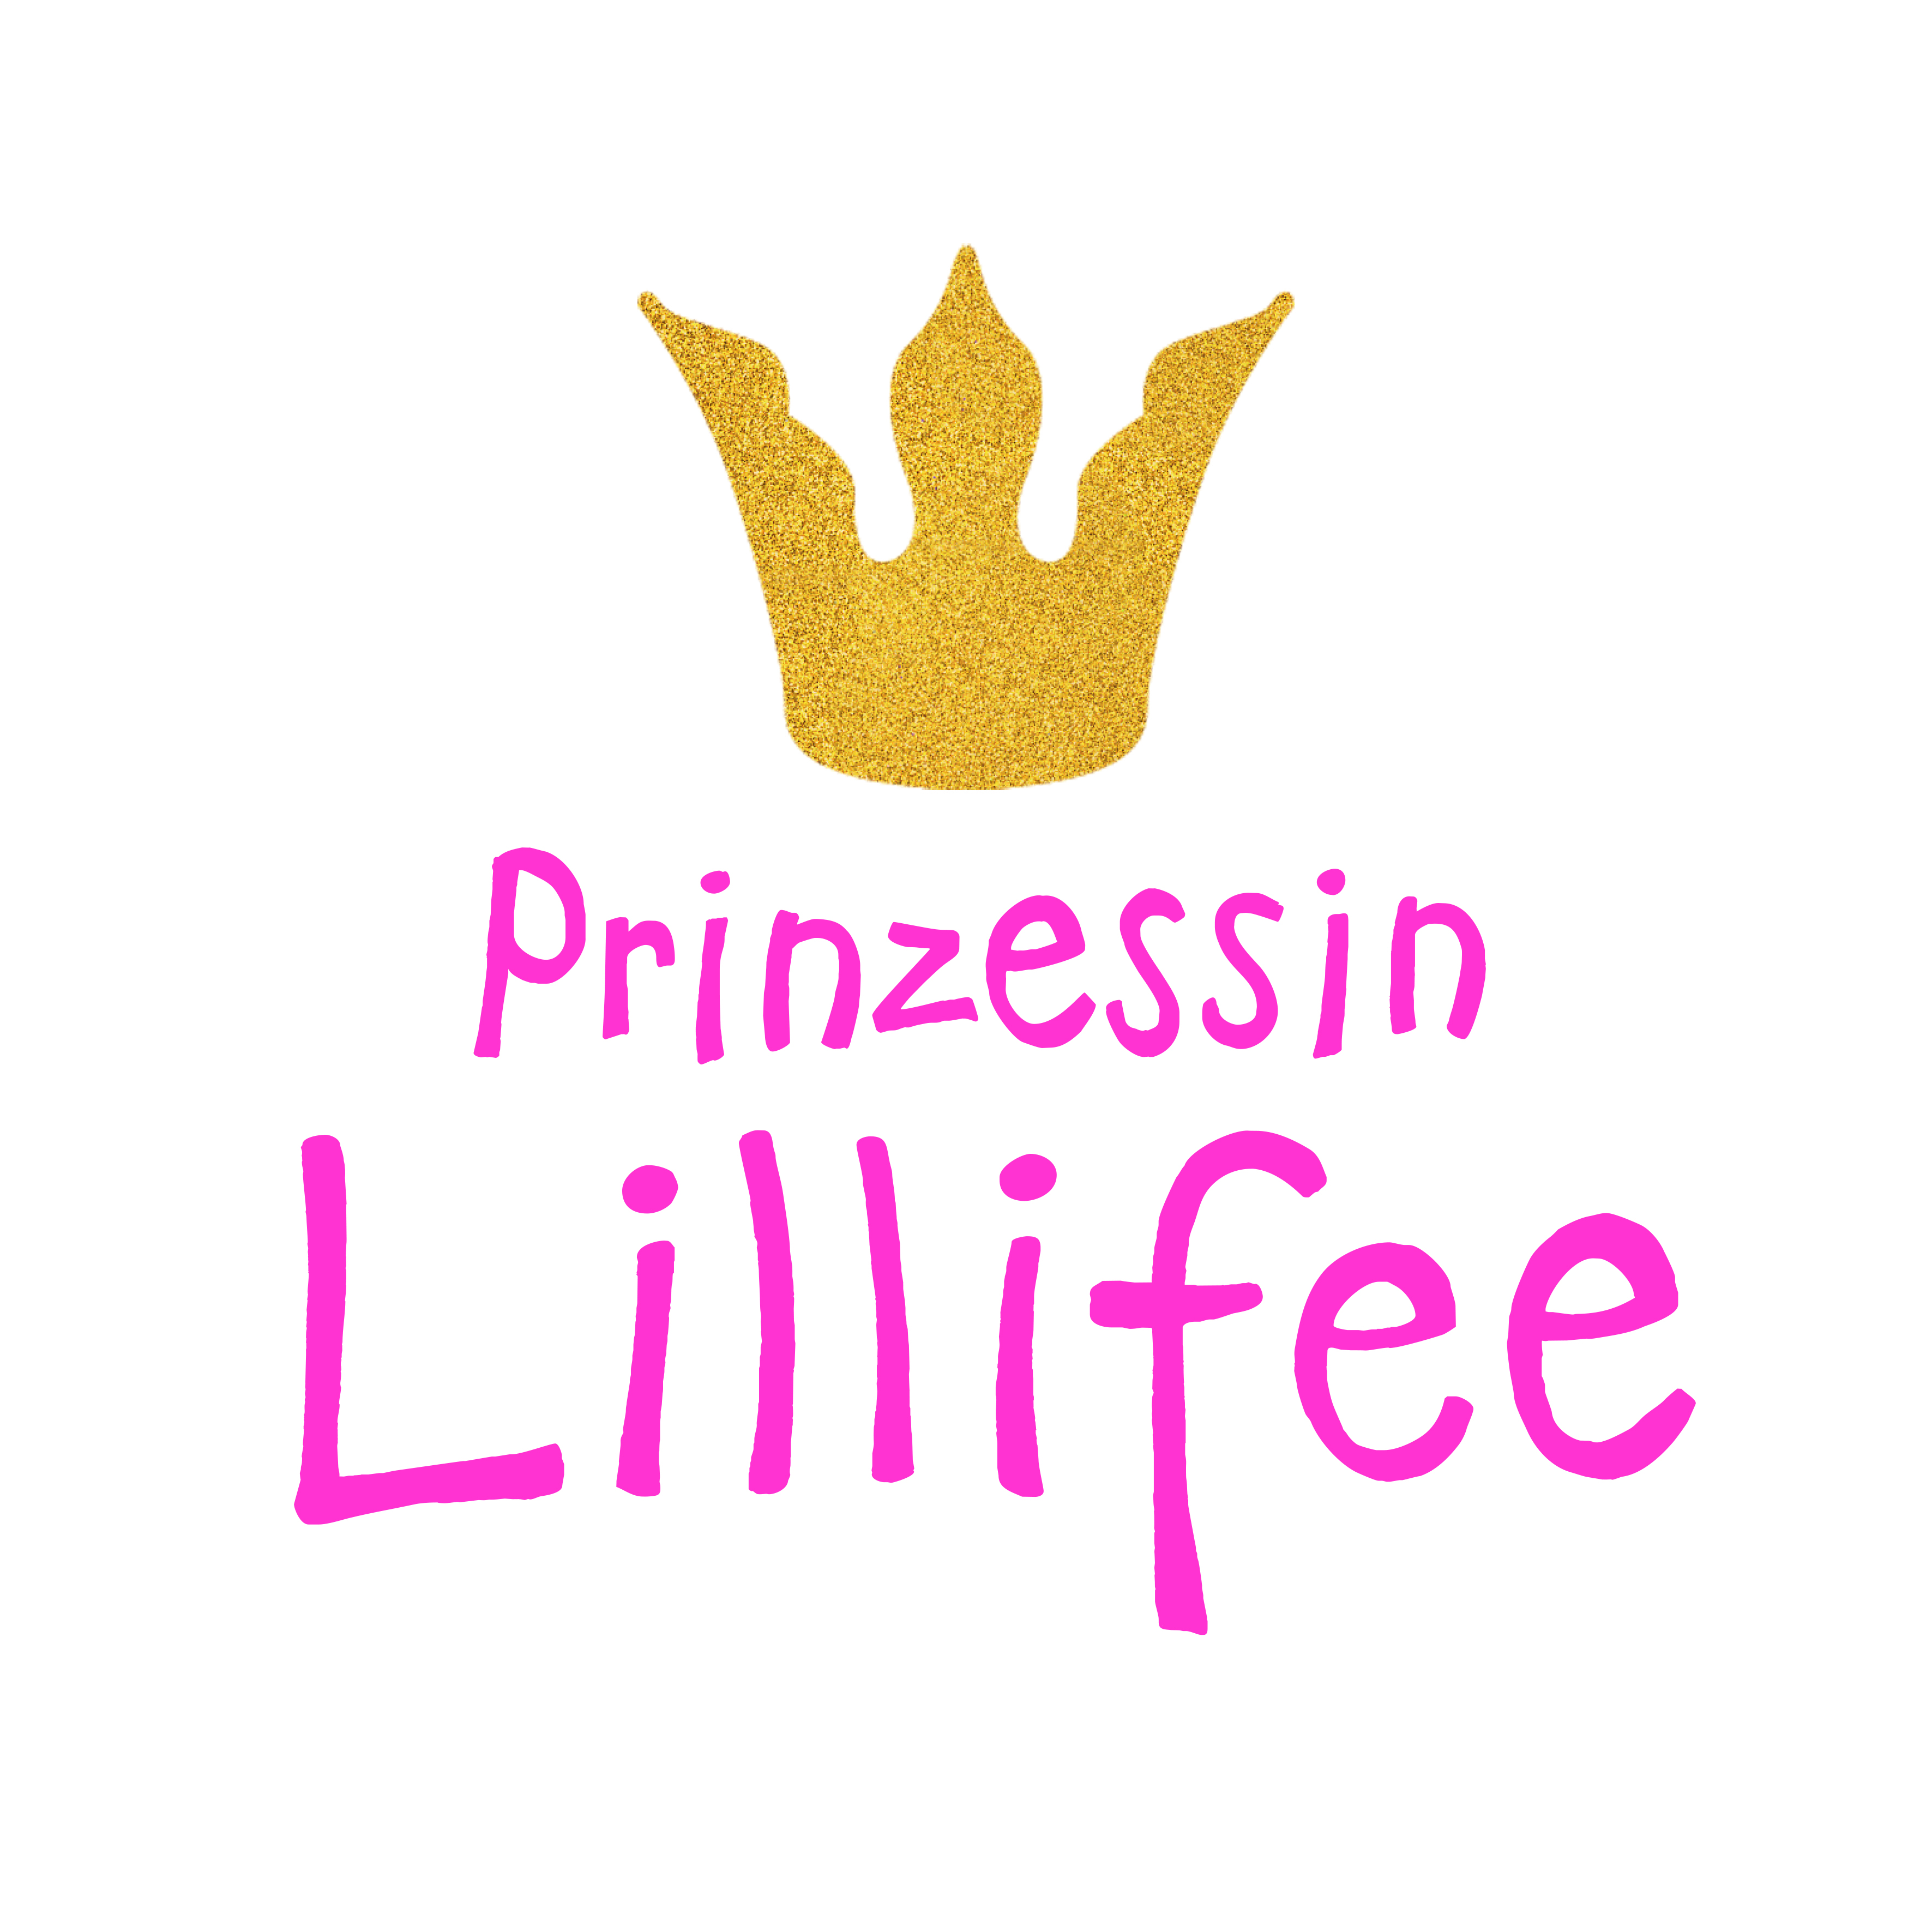 Puppen-Accessoires-Set "Prinzessin Lillifee", 3-teilig : Ballerinas, Glitzerkrone und Zauberstab, Gr. 38-45 cm